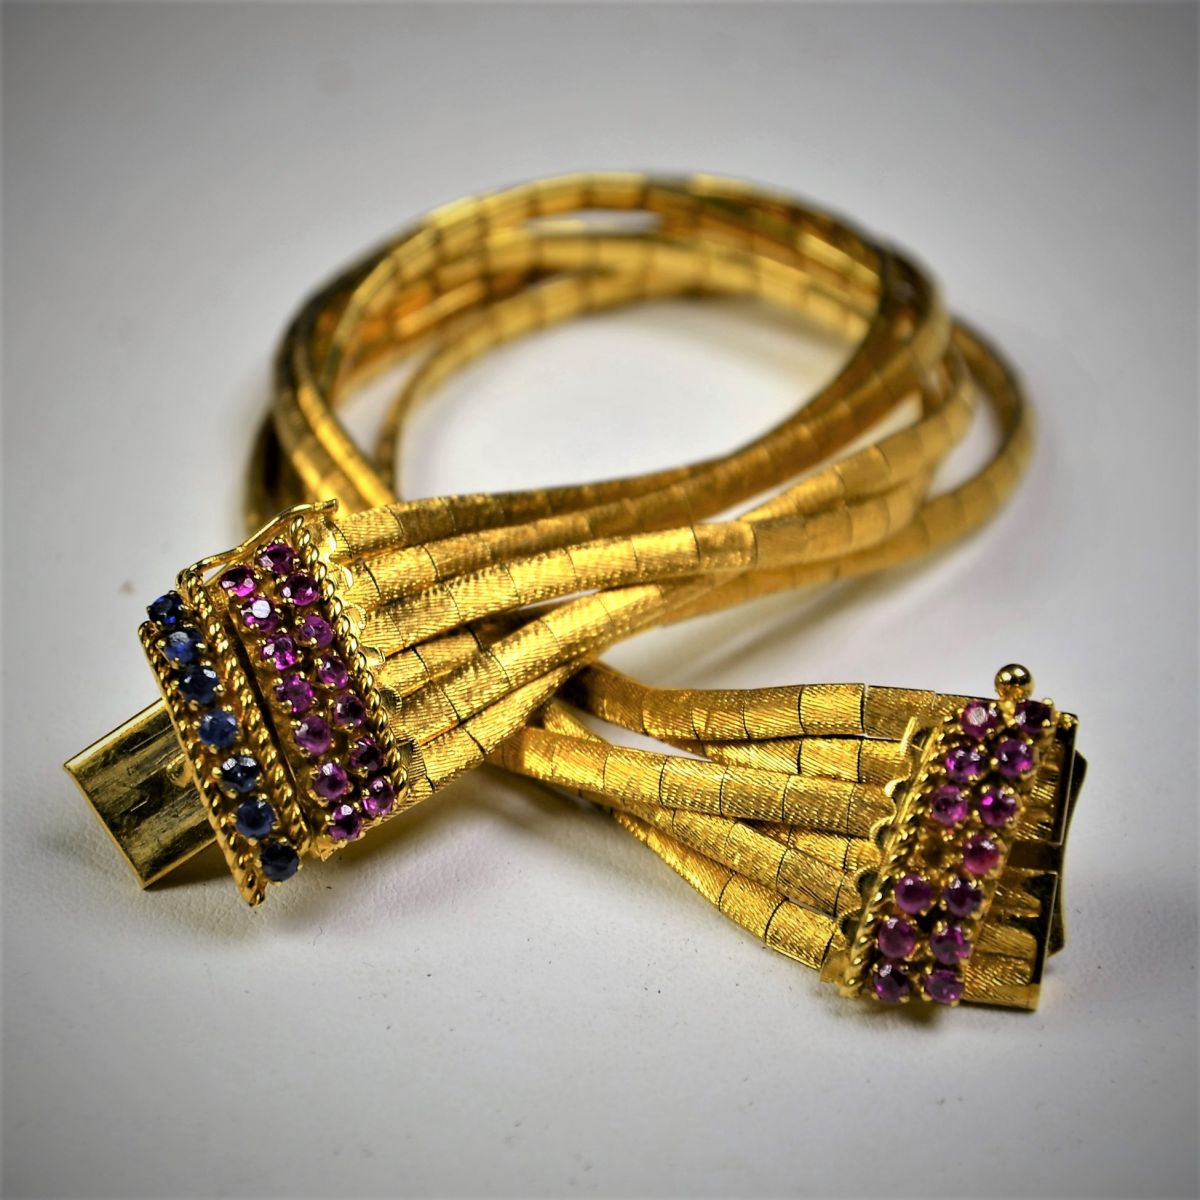 Bracelet en or 18 ct avec rubis et saphirs 18,5 cm 46,4 g.